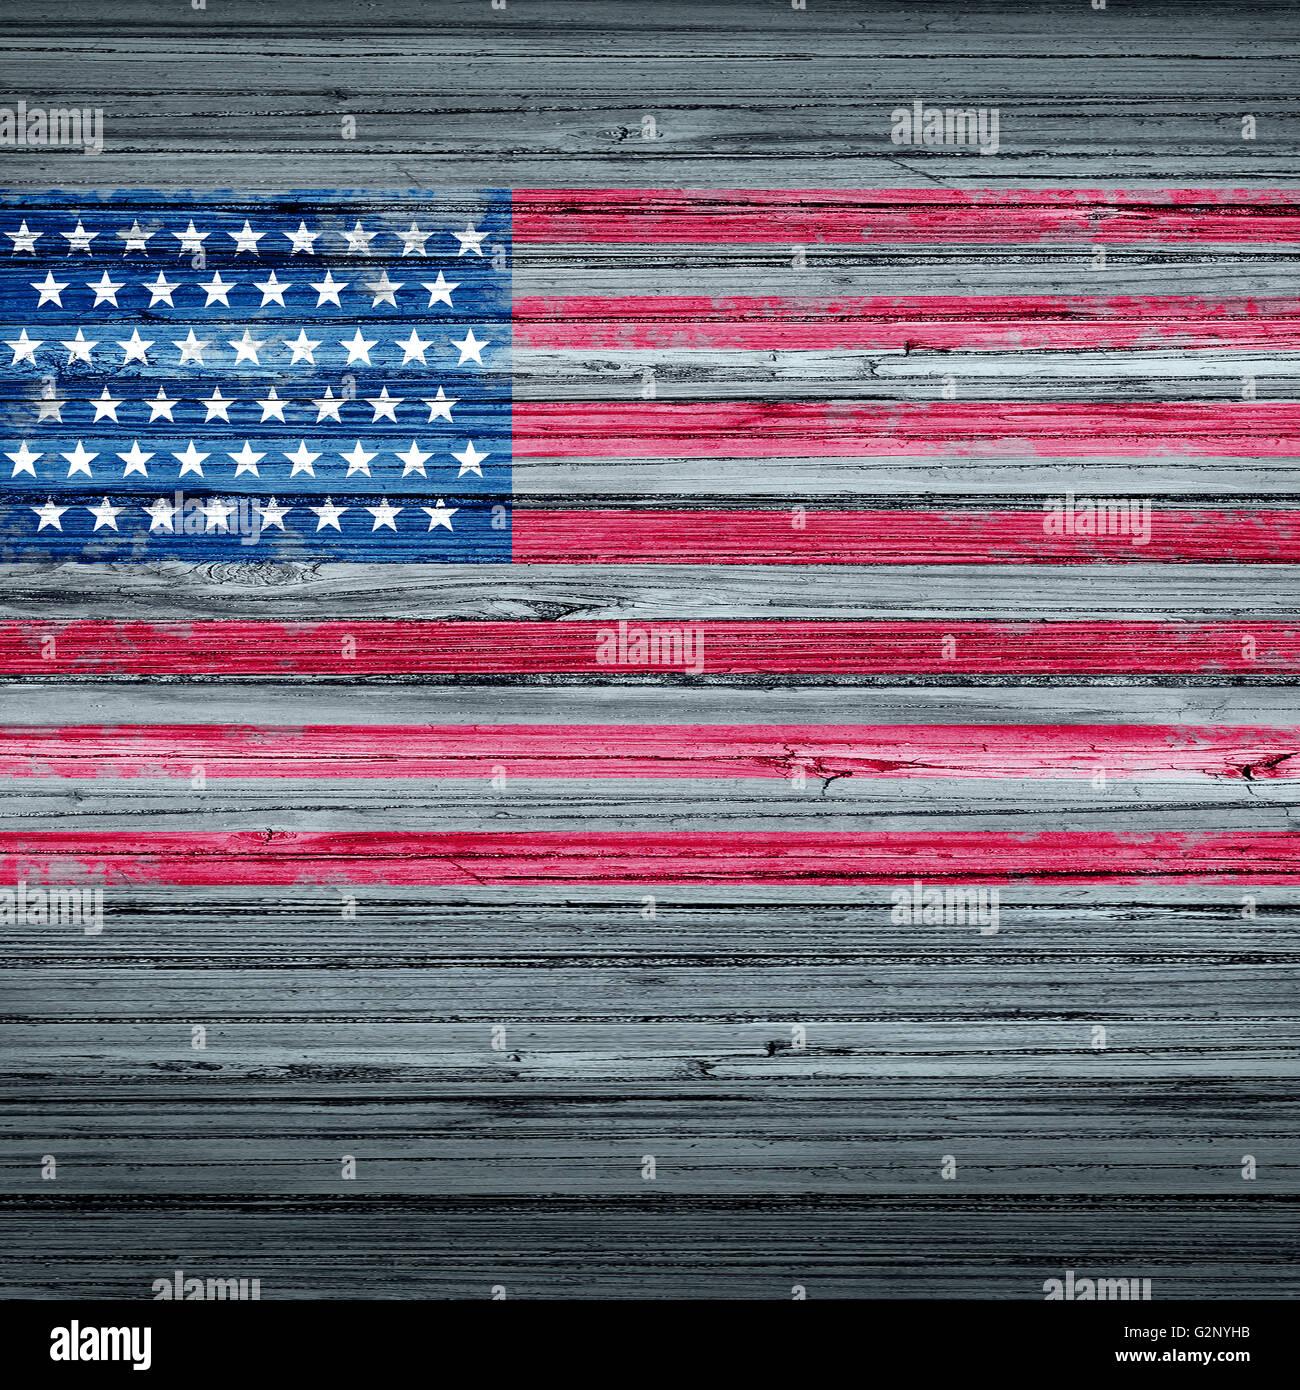 Amerikanische Gedenktag Hintergrund rustikalen Antik USA Flagge auf alte verwitterte Holz als patriotisches Symbol für Gedenktag Beachtung als ein Symbol der traditionellen Feiertag zu Ehren die Veteranen in eine 3D Darstellung Stil gemalt. Stockfoto